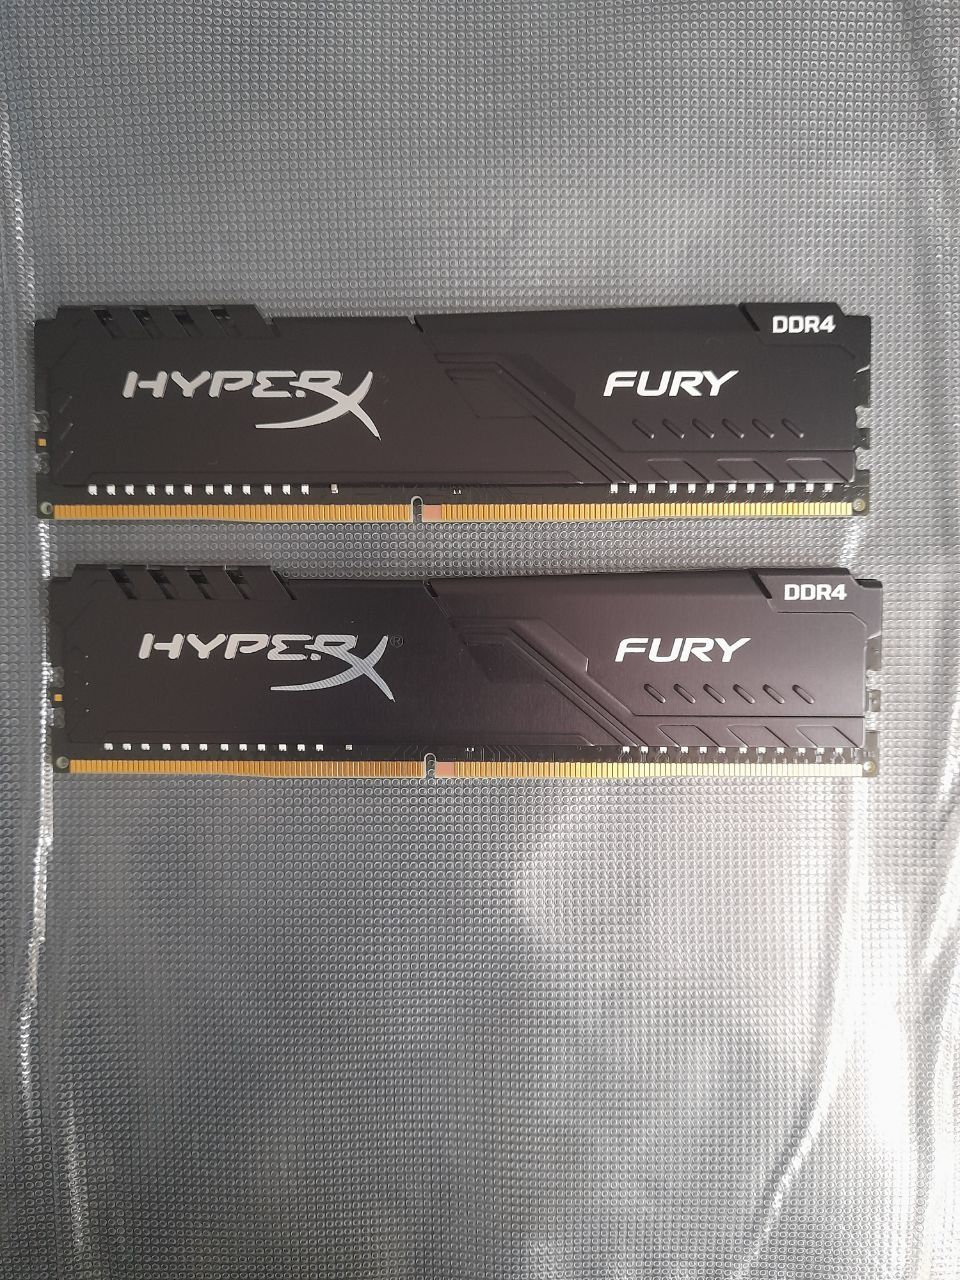 RAM DDR4 2x8GB HyperX Fury